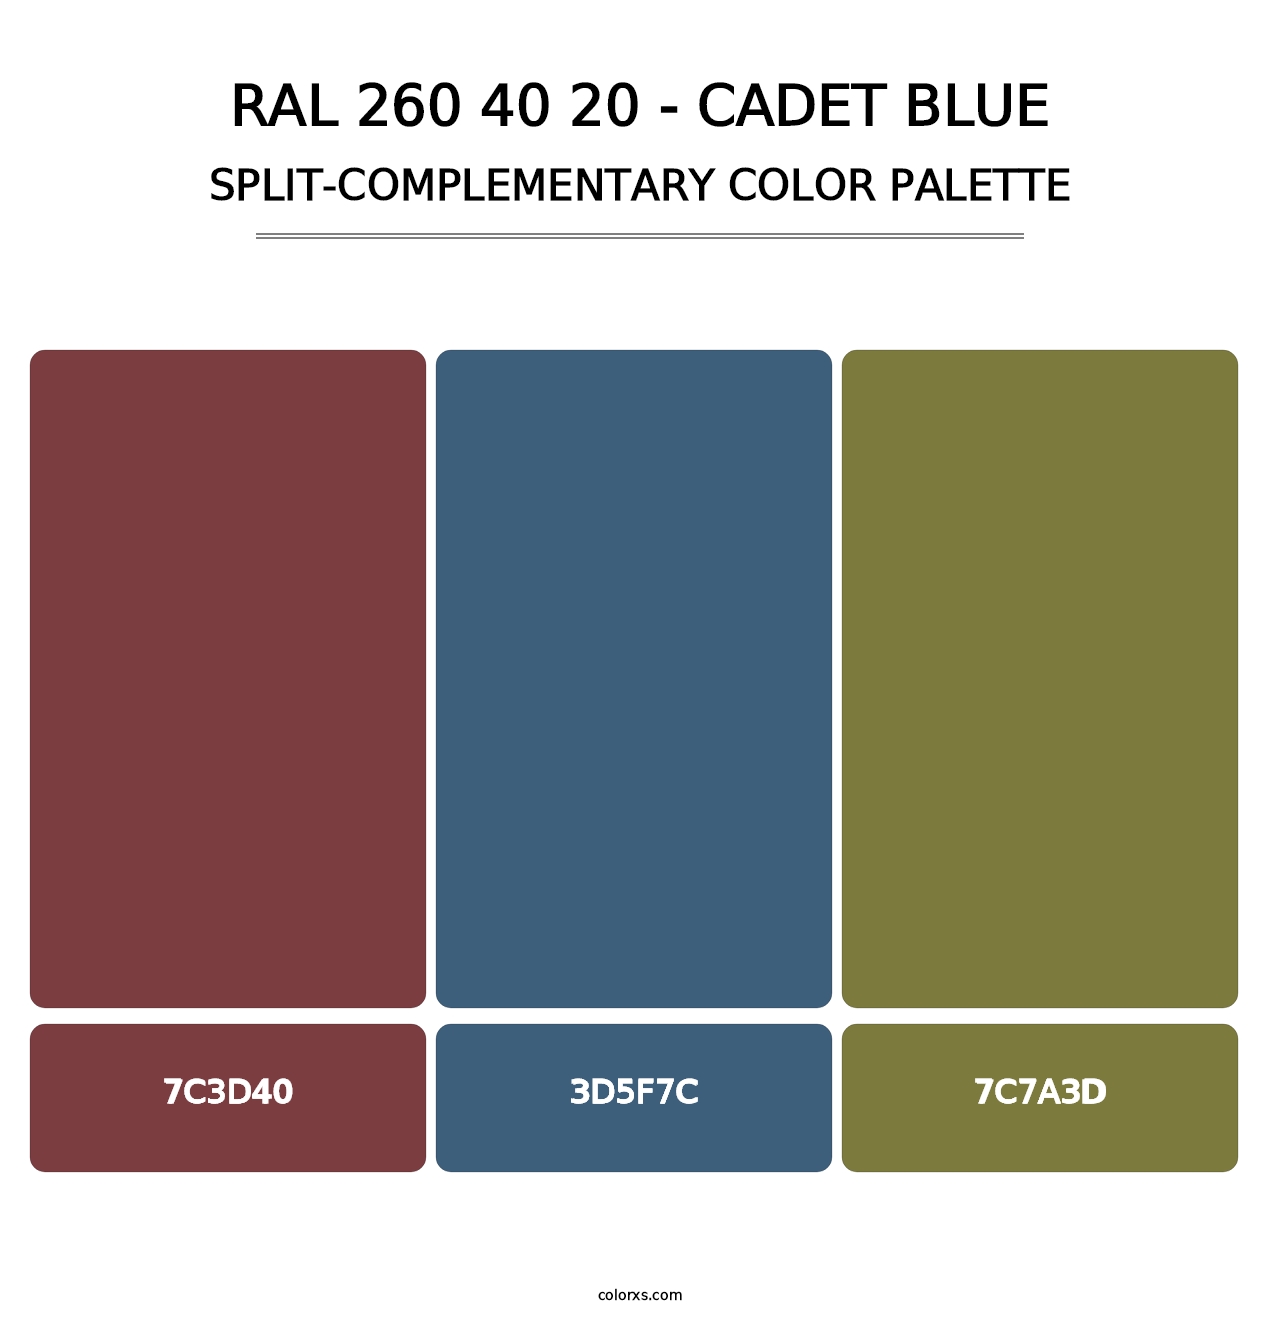 RAL 260 40 20 - Cadet Blue - Split-Complementary Color Palette